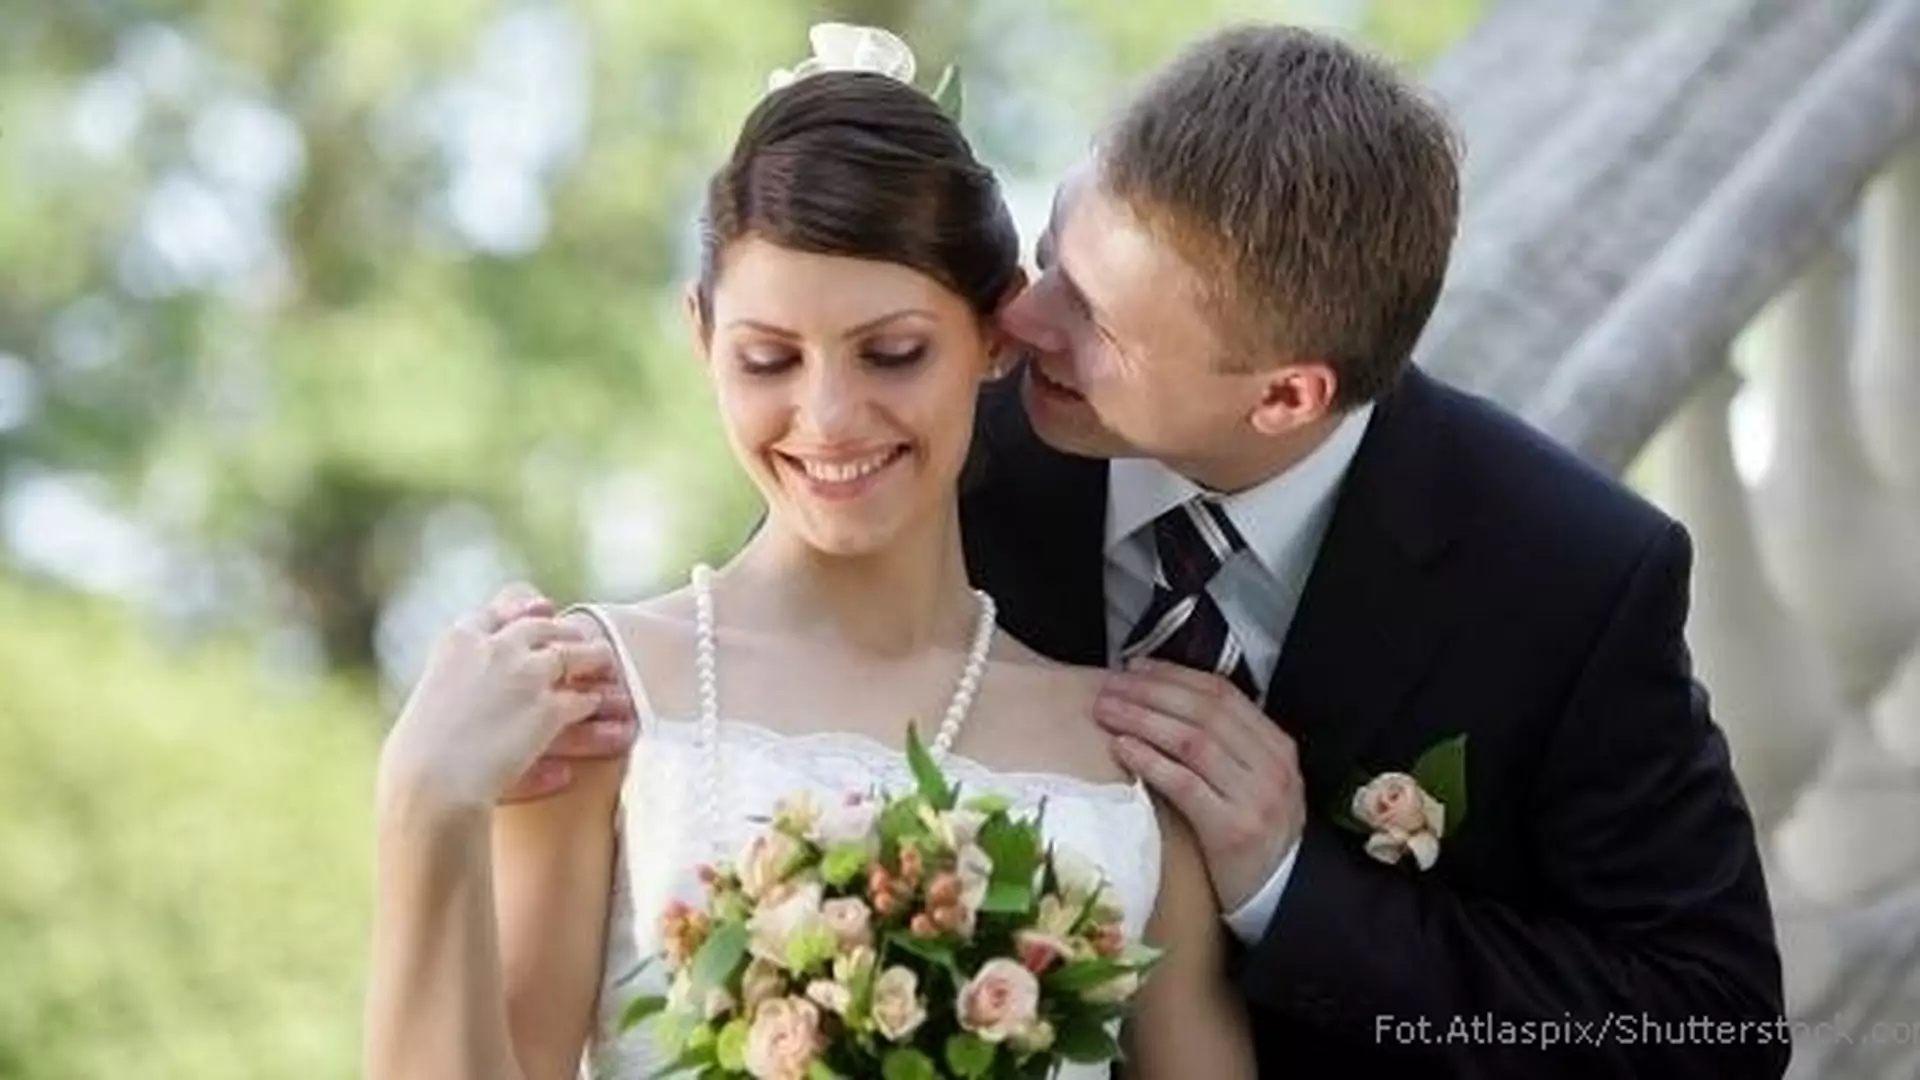 Ślub cywilny: przyszłych małżonków droga przez formalności